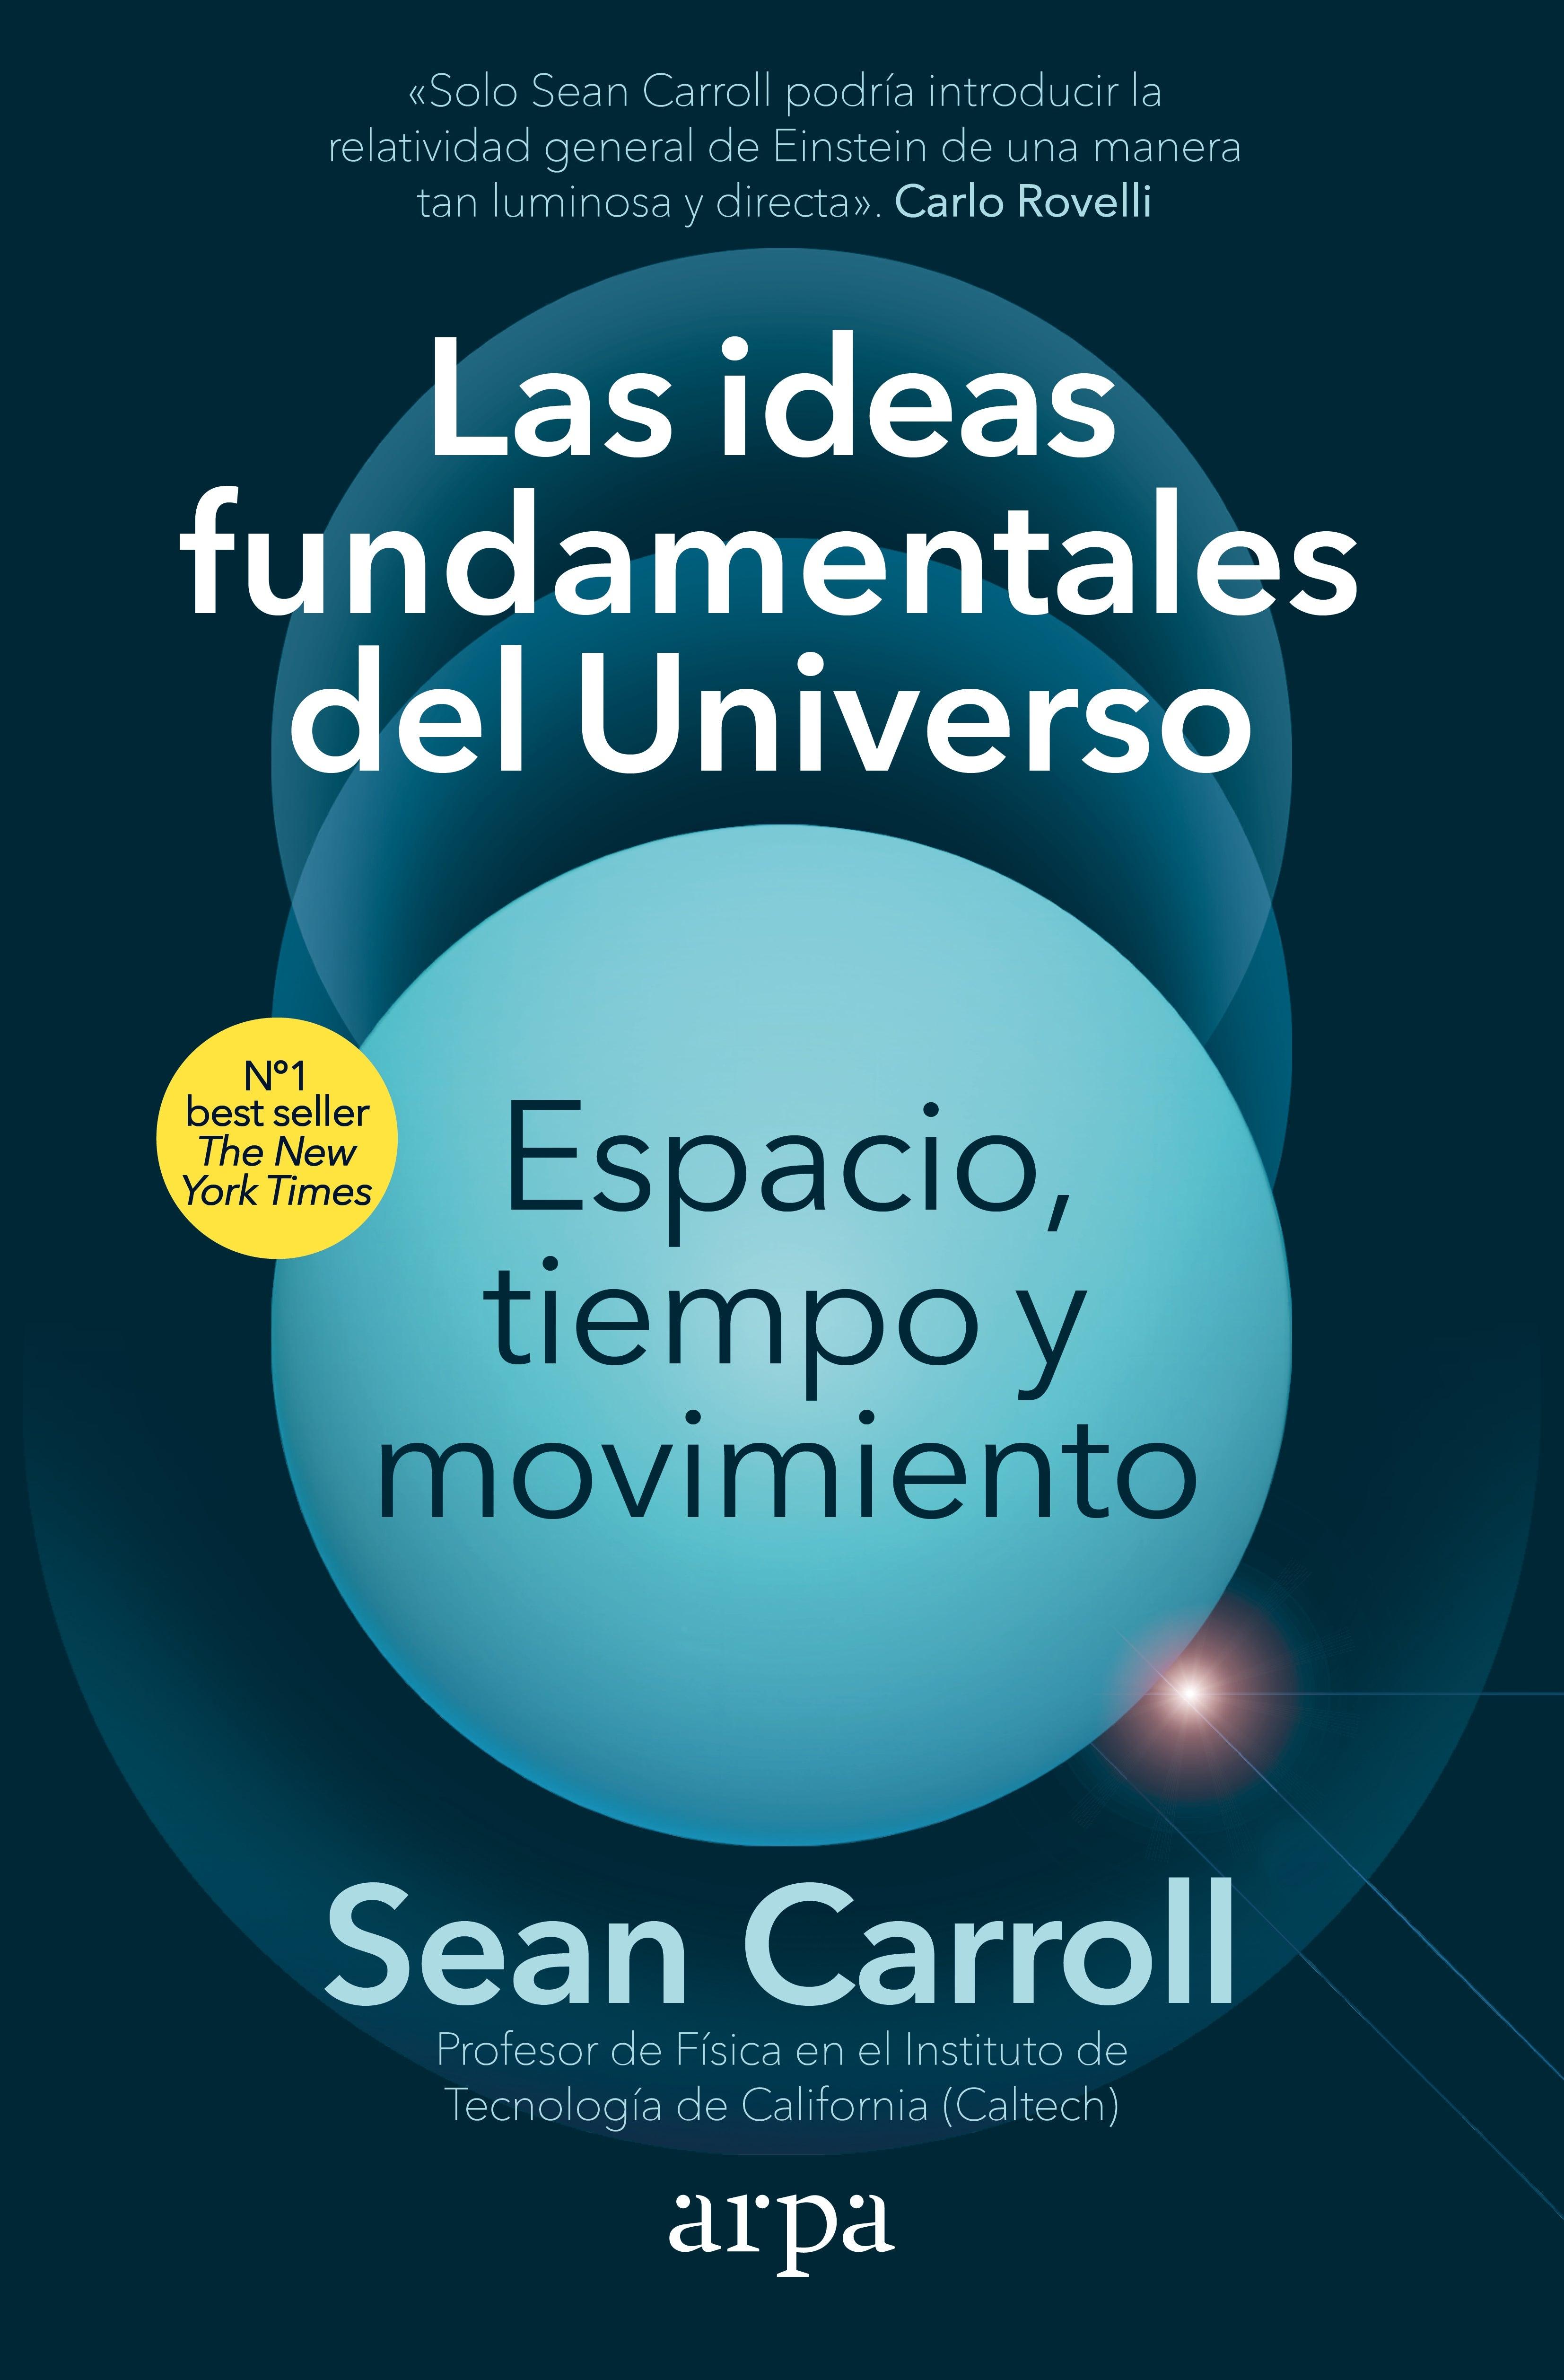 Ideas fundamentales del Universo, Las. Espacio, tiempo y movimiento "Espacio, tiempo y movimiento"